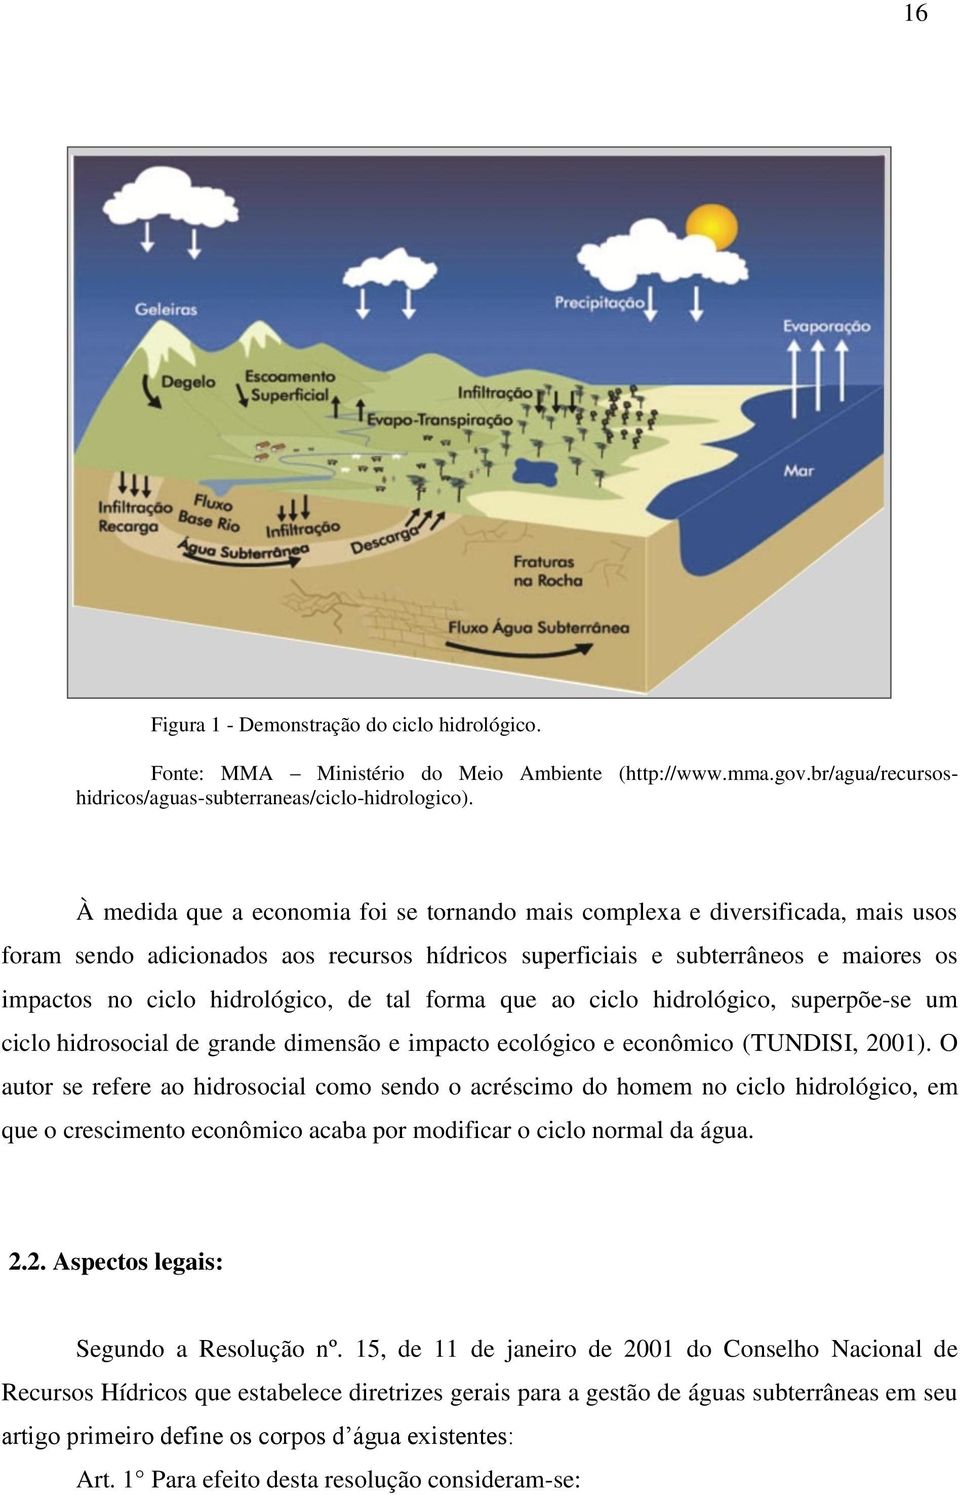 de tal forma que ao ciclo hidrológico, superpõe-se um ciclo hidrosocial de grande dimensão e impacto ecológico e econômico (TUNDISI, 2001).